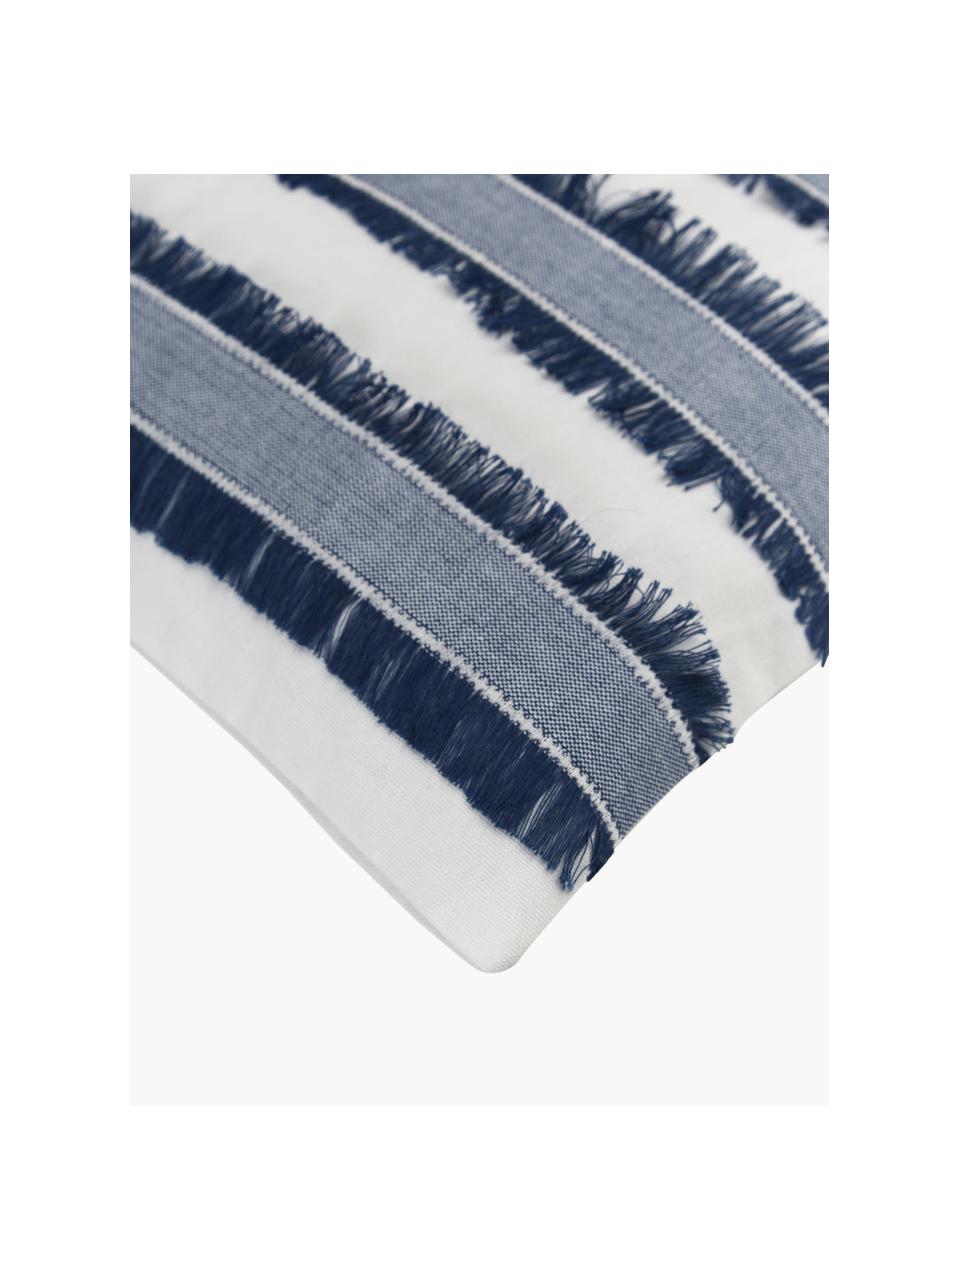 Copricuscino in cotone con frange Raja, 100% cotone, Blu, bianco crema, Larg. 45 x Lung. 45 cm